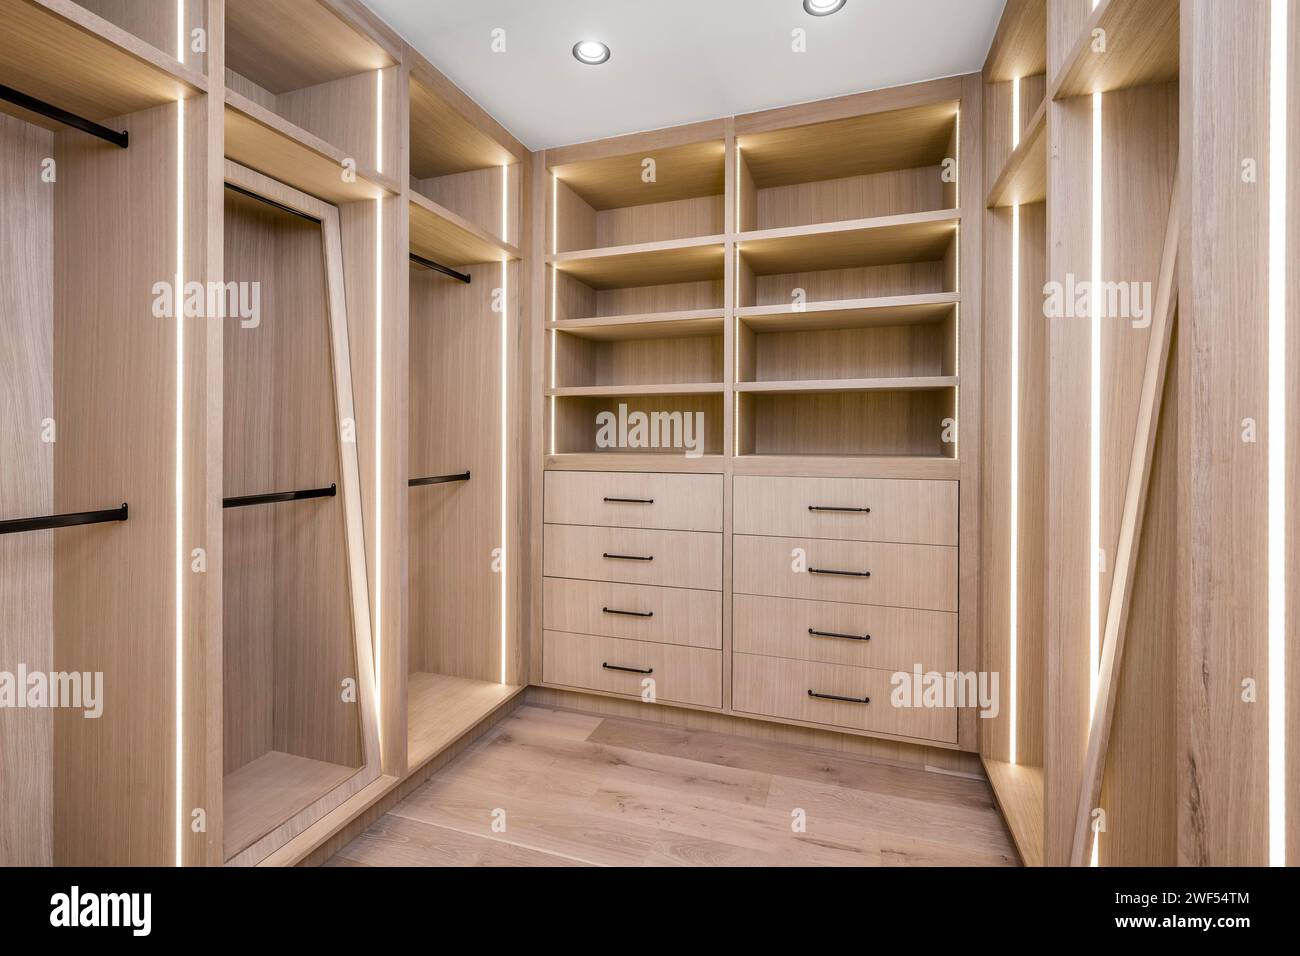 Un dressing spacieux avec des étagères en bois élégantes, des tiroirs et des étagères ouvertes pour l'organisation Banque D'Images